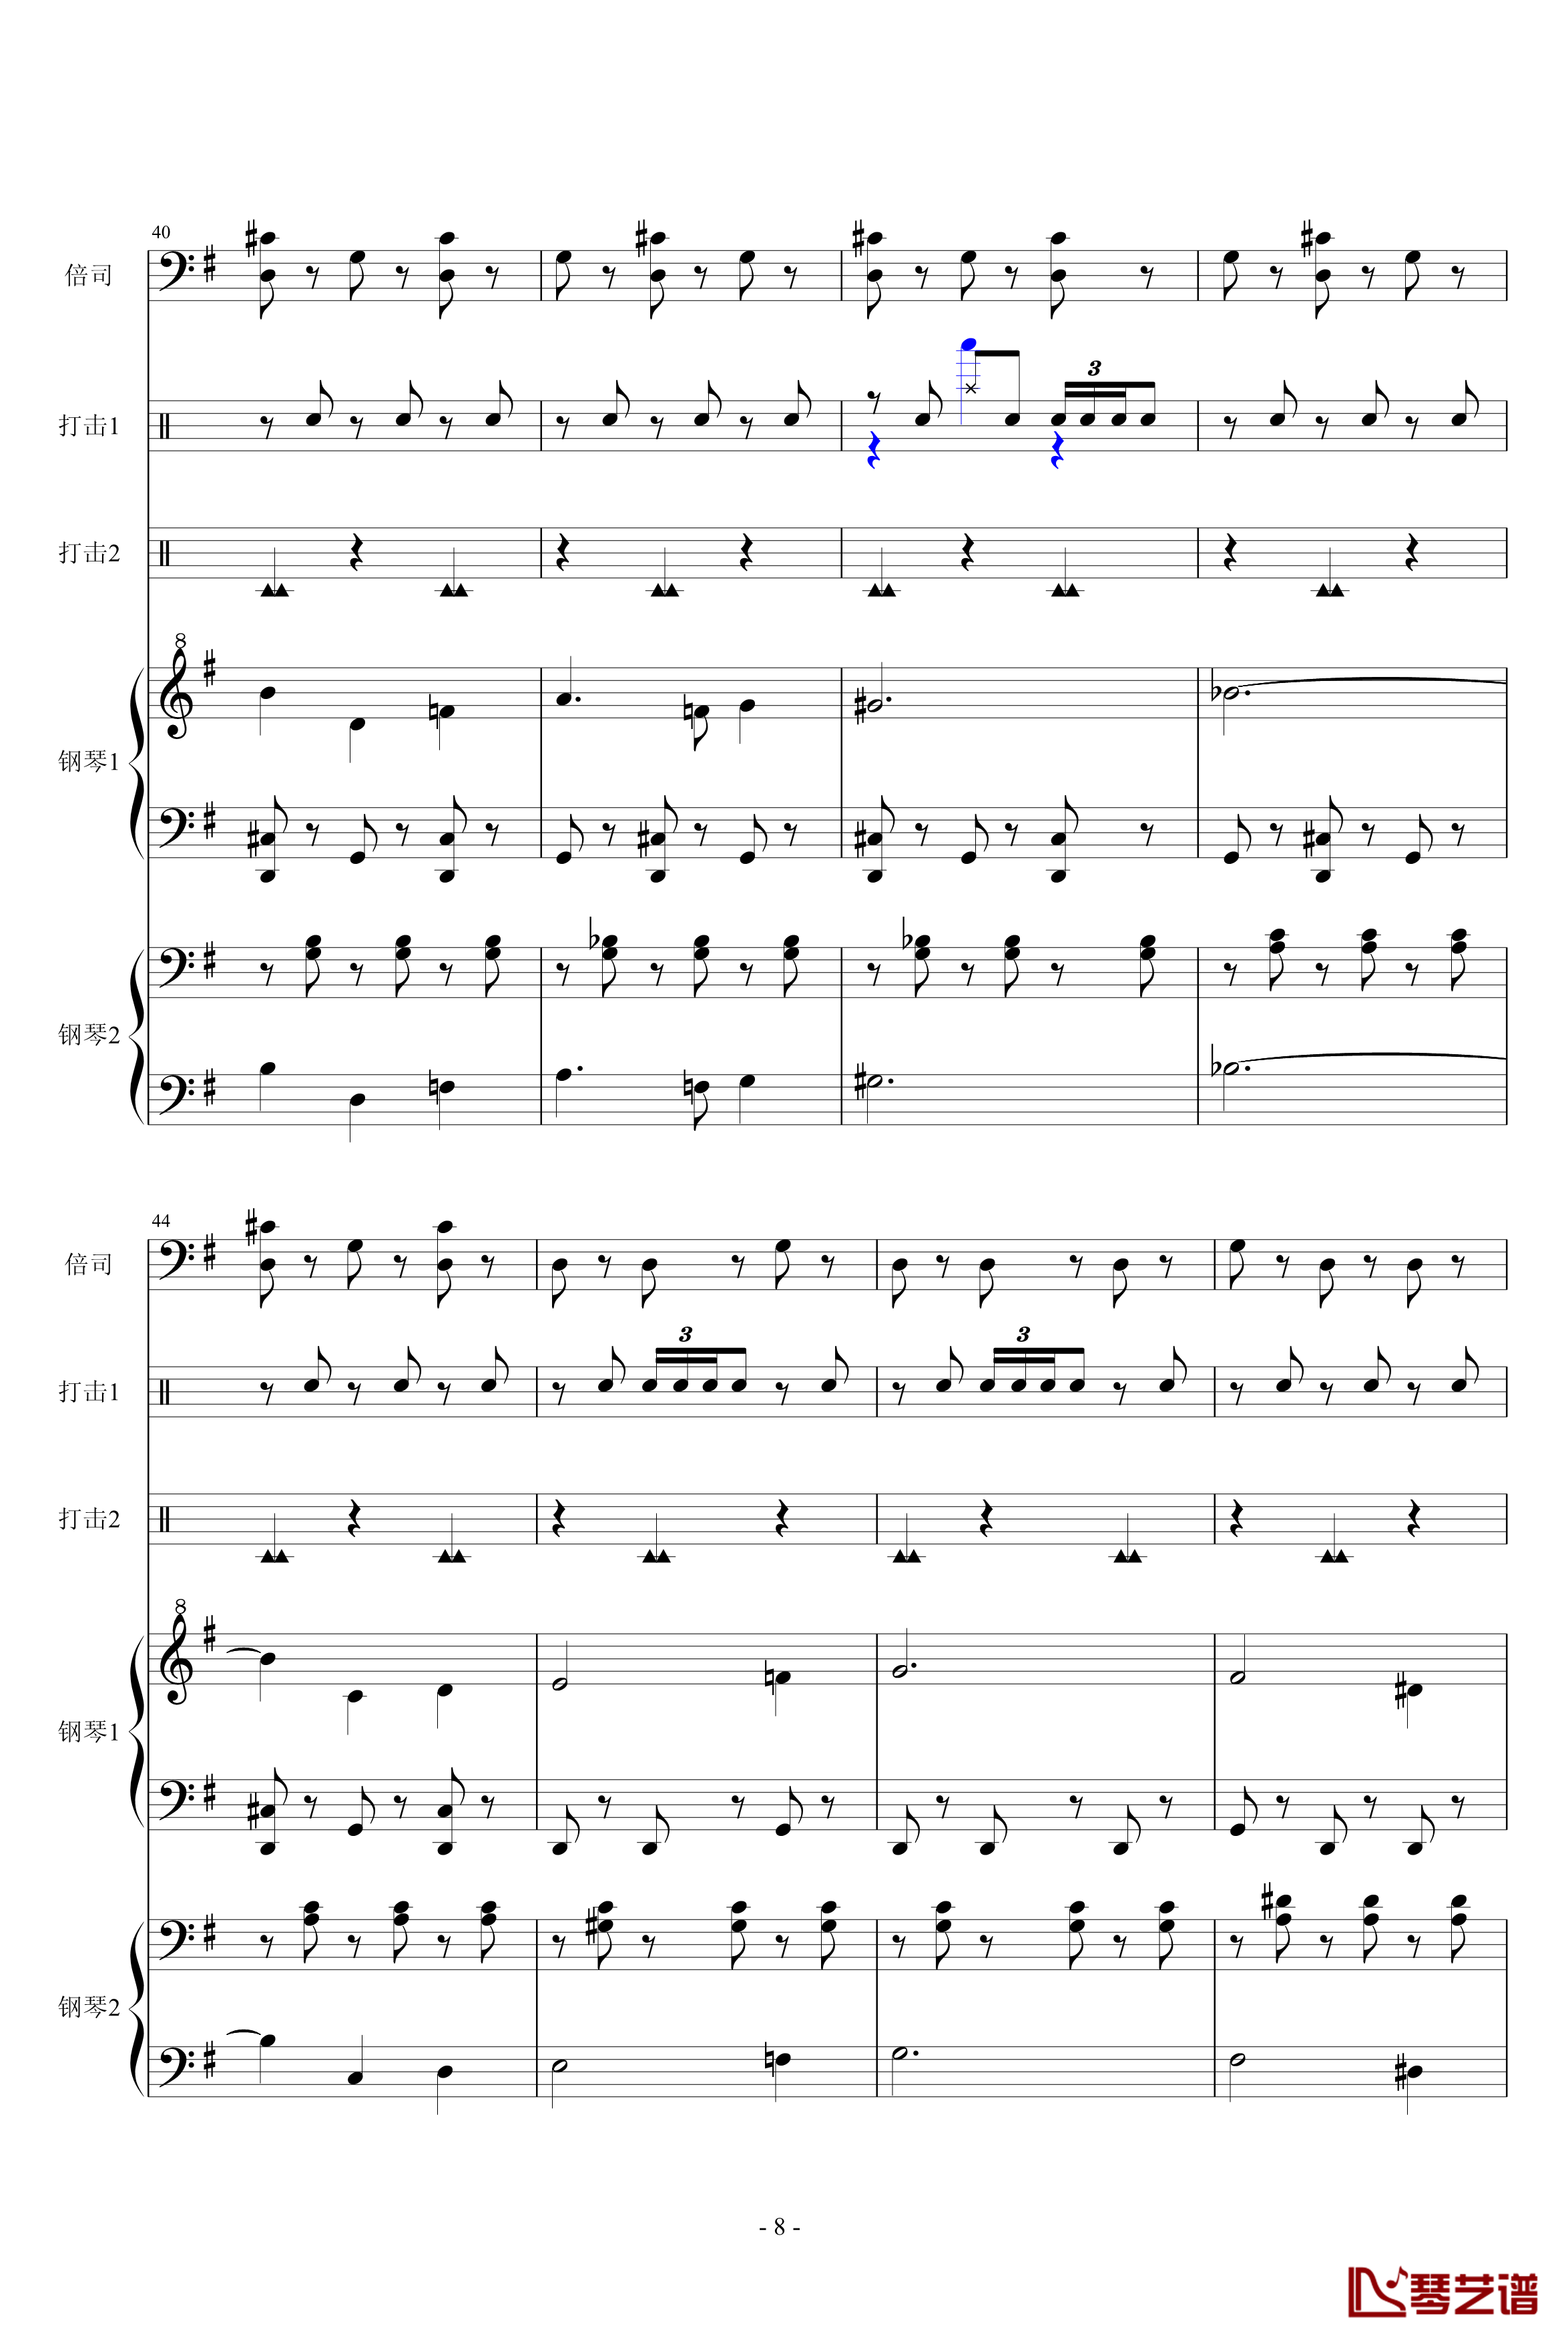 马刀舞曲钢琴谱-乐队总谱-世界名曲8